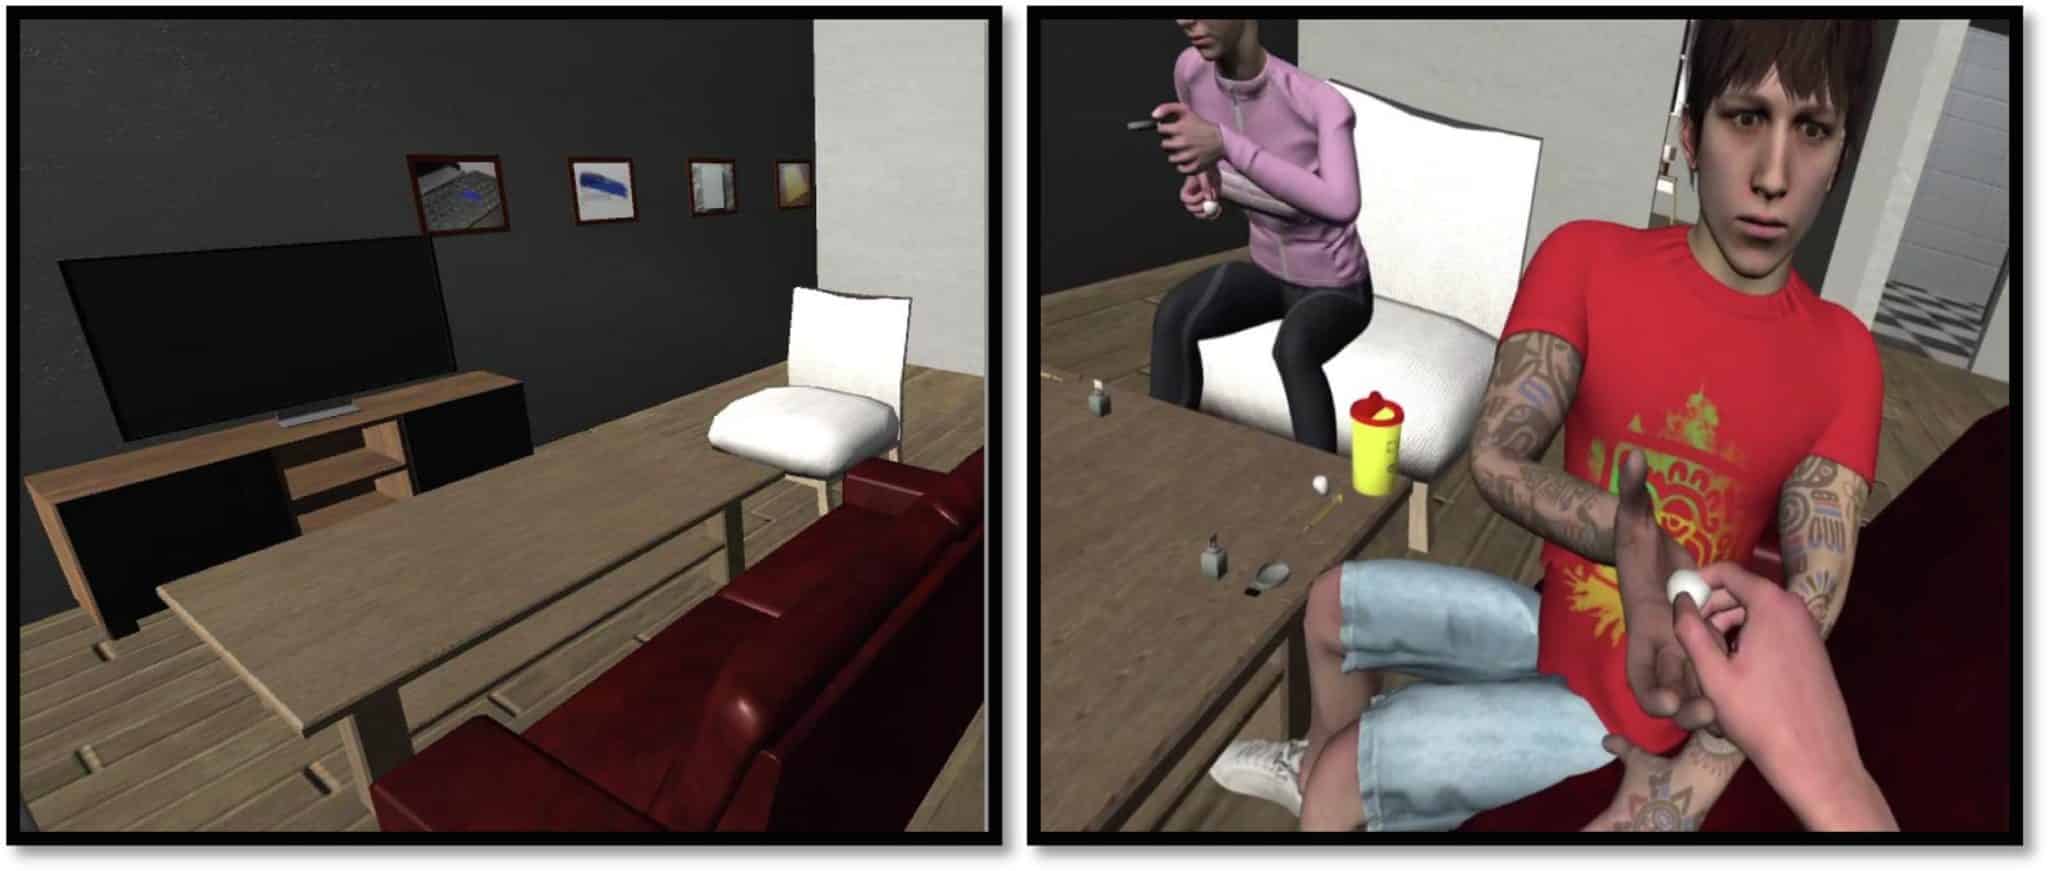 VR-сценарии, использованные в эксперименте: слева нейтральный, справа — пробуждающий жажду кокаина / © Addictive Behaviors Reports, Thomas Lehoux et al.